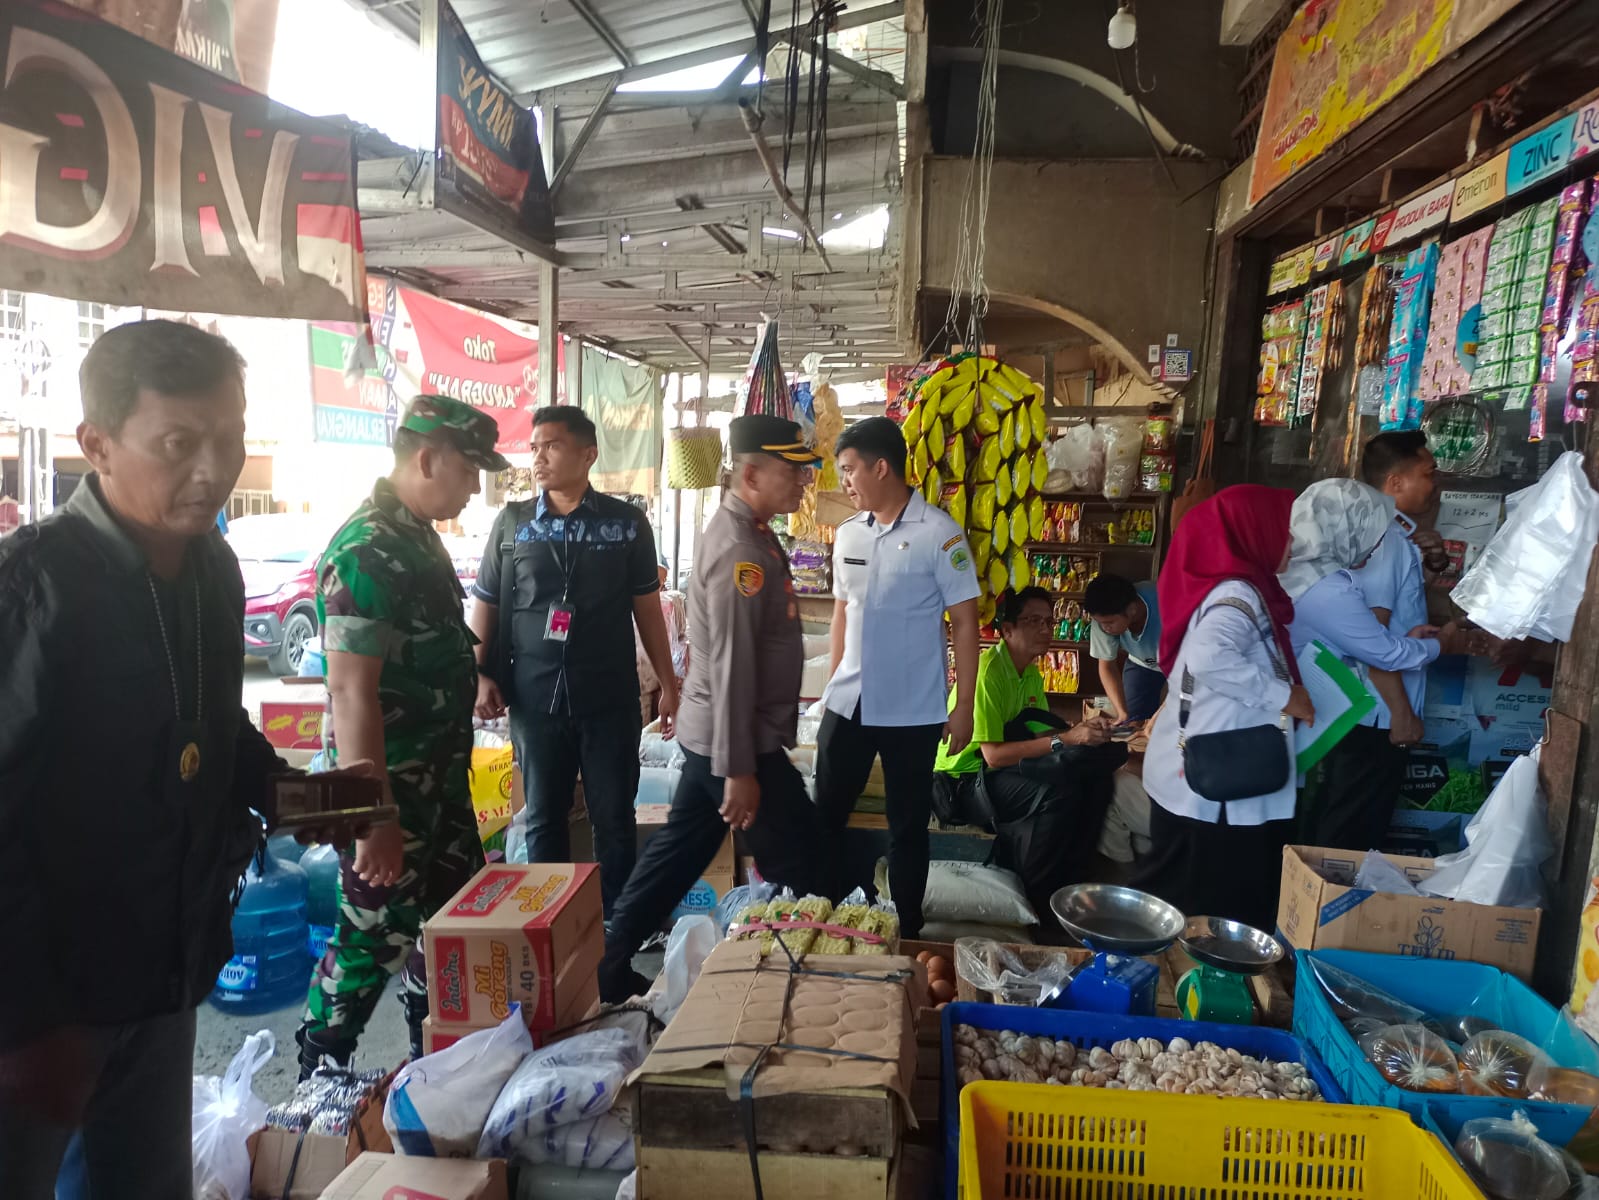 Polsek Talang Ubi Bersama Forkopimda Melaksanakan kegiatan Sidak dan Pemantauan Harga di Pasar Impres Pendopo